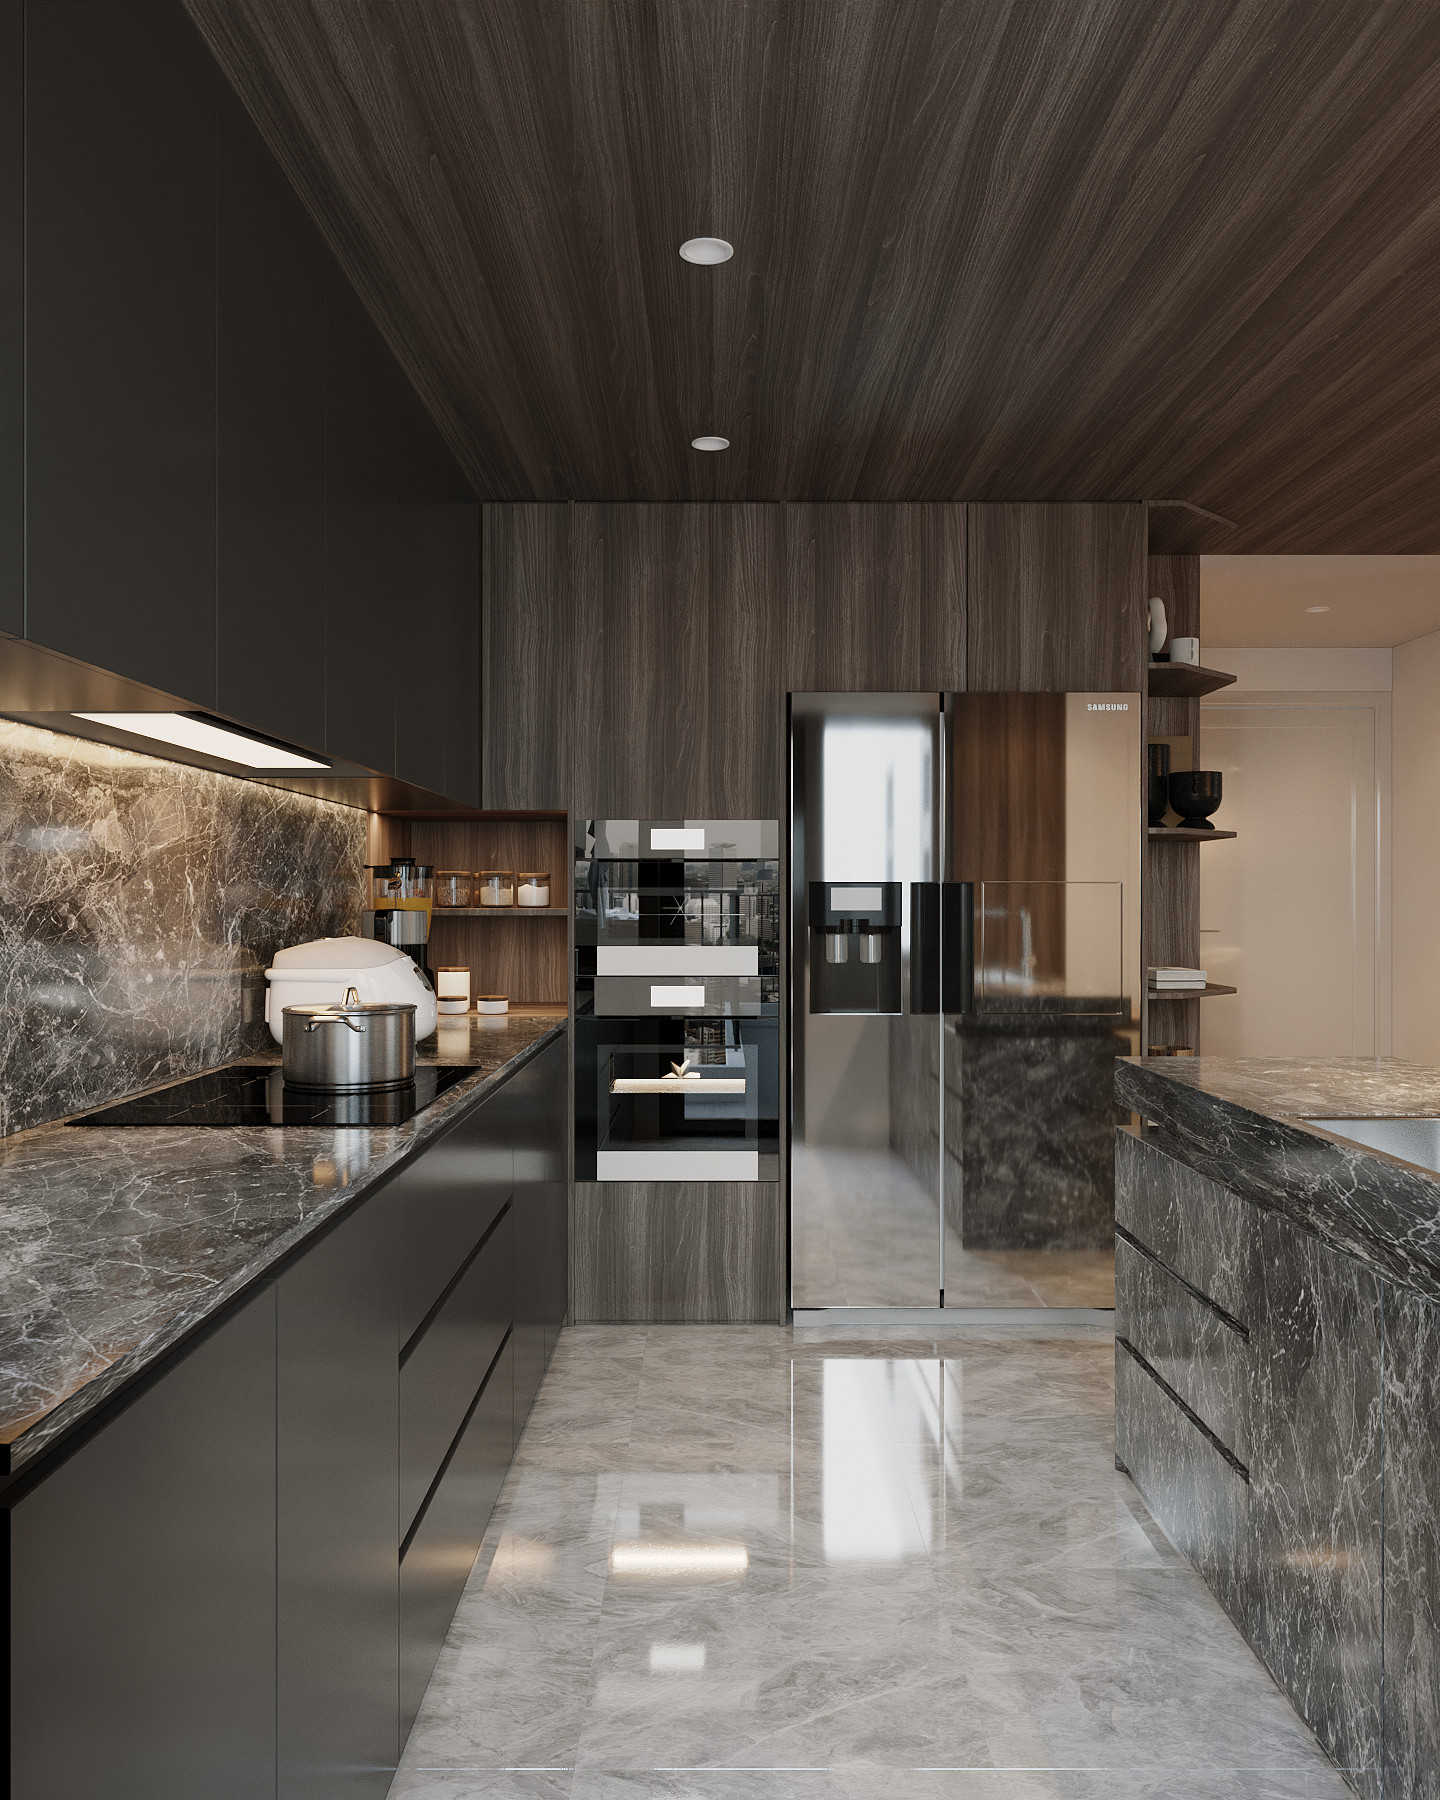 Phòng bếp, phong cách Hiện đại Modern, thiết kế concept nội thất, căn hộ Saigon Pearl Topaz 2